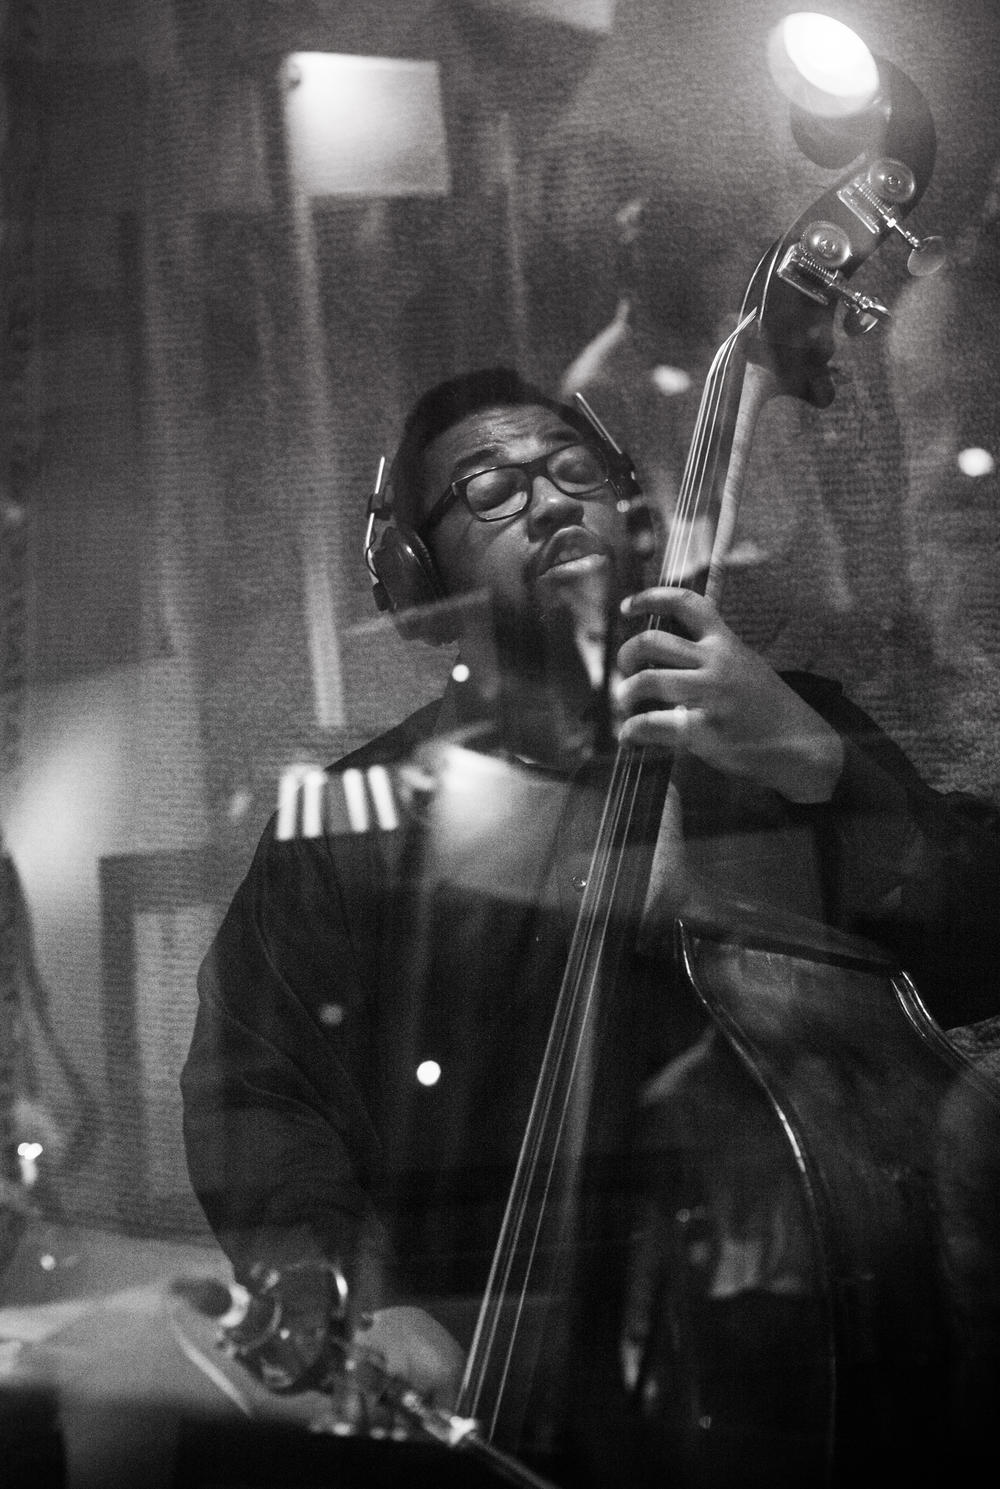 Dezron Douglas plays bass, for The Baylor Project album 